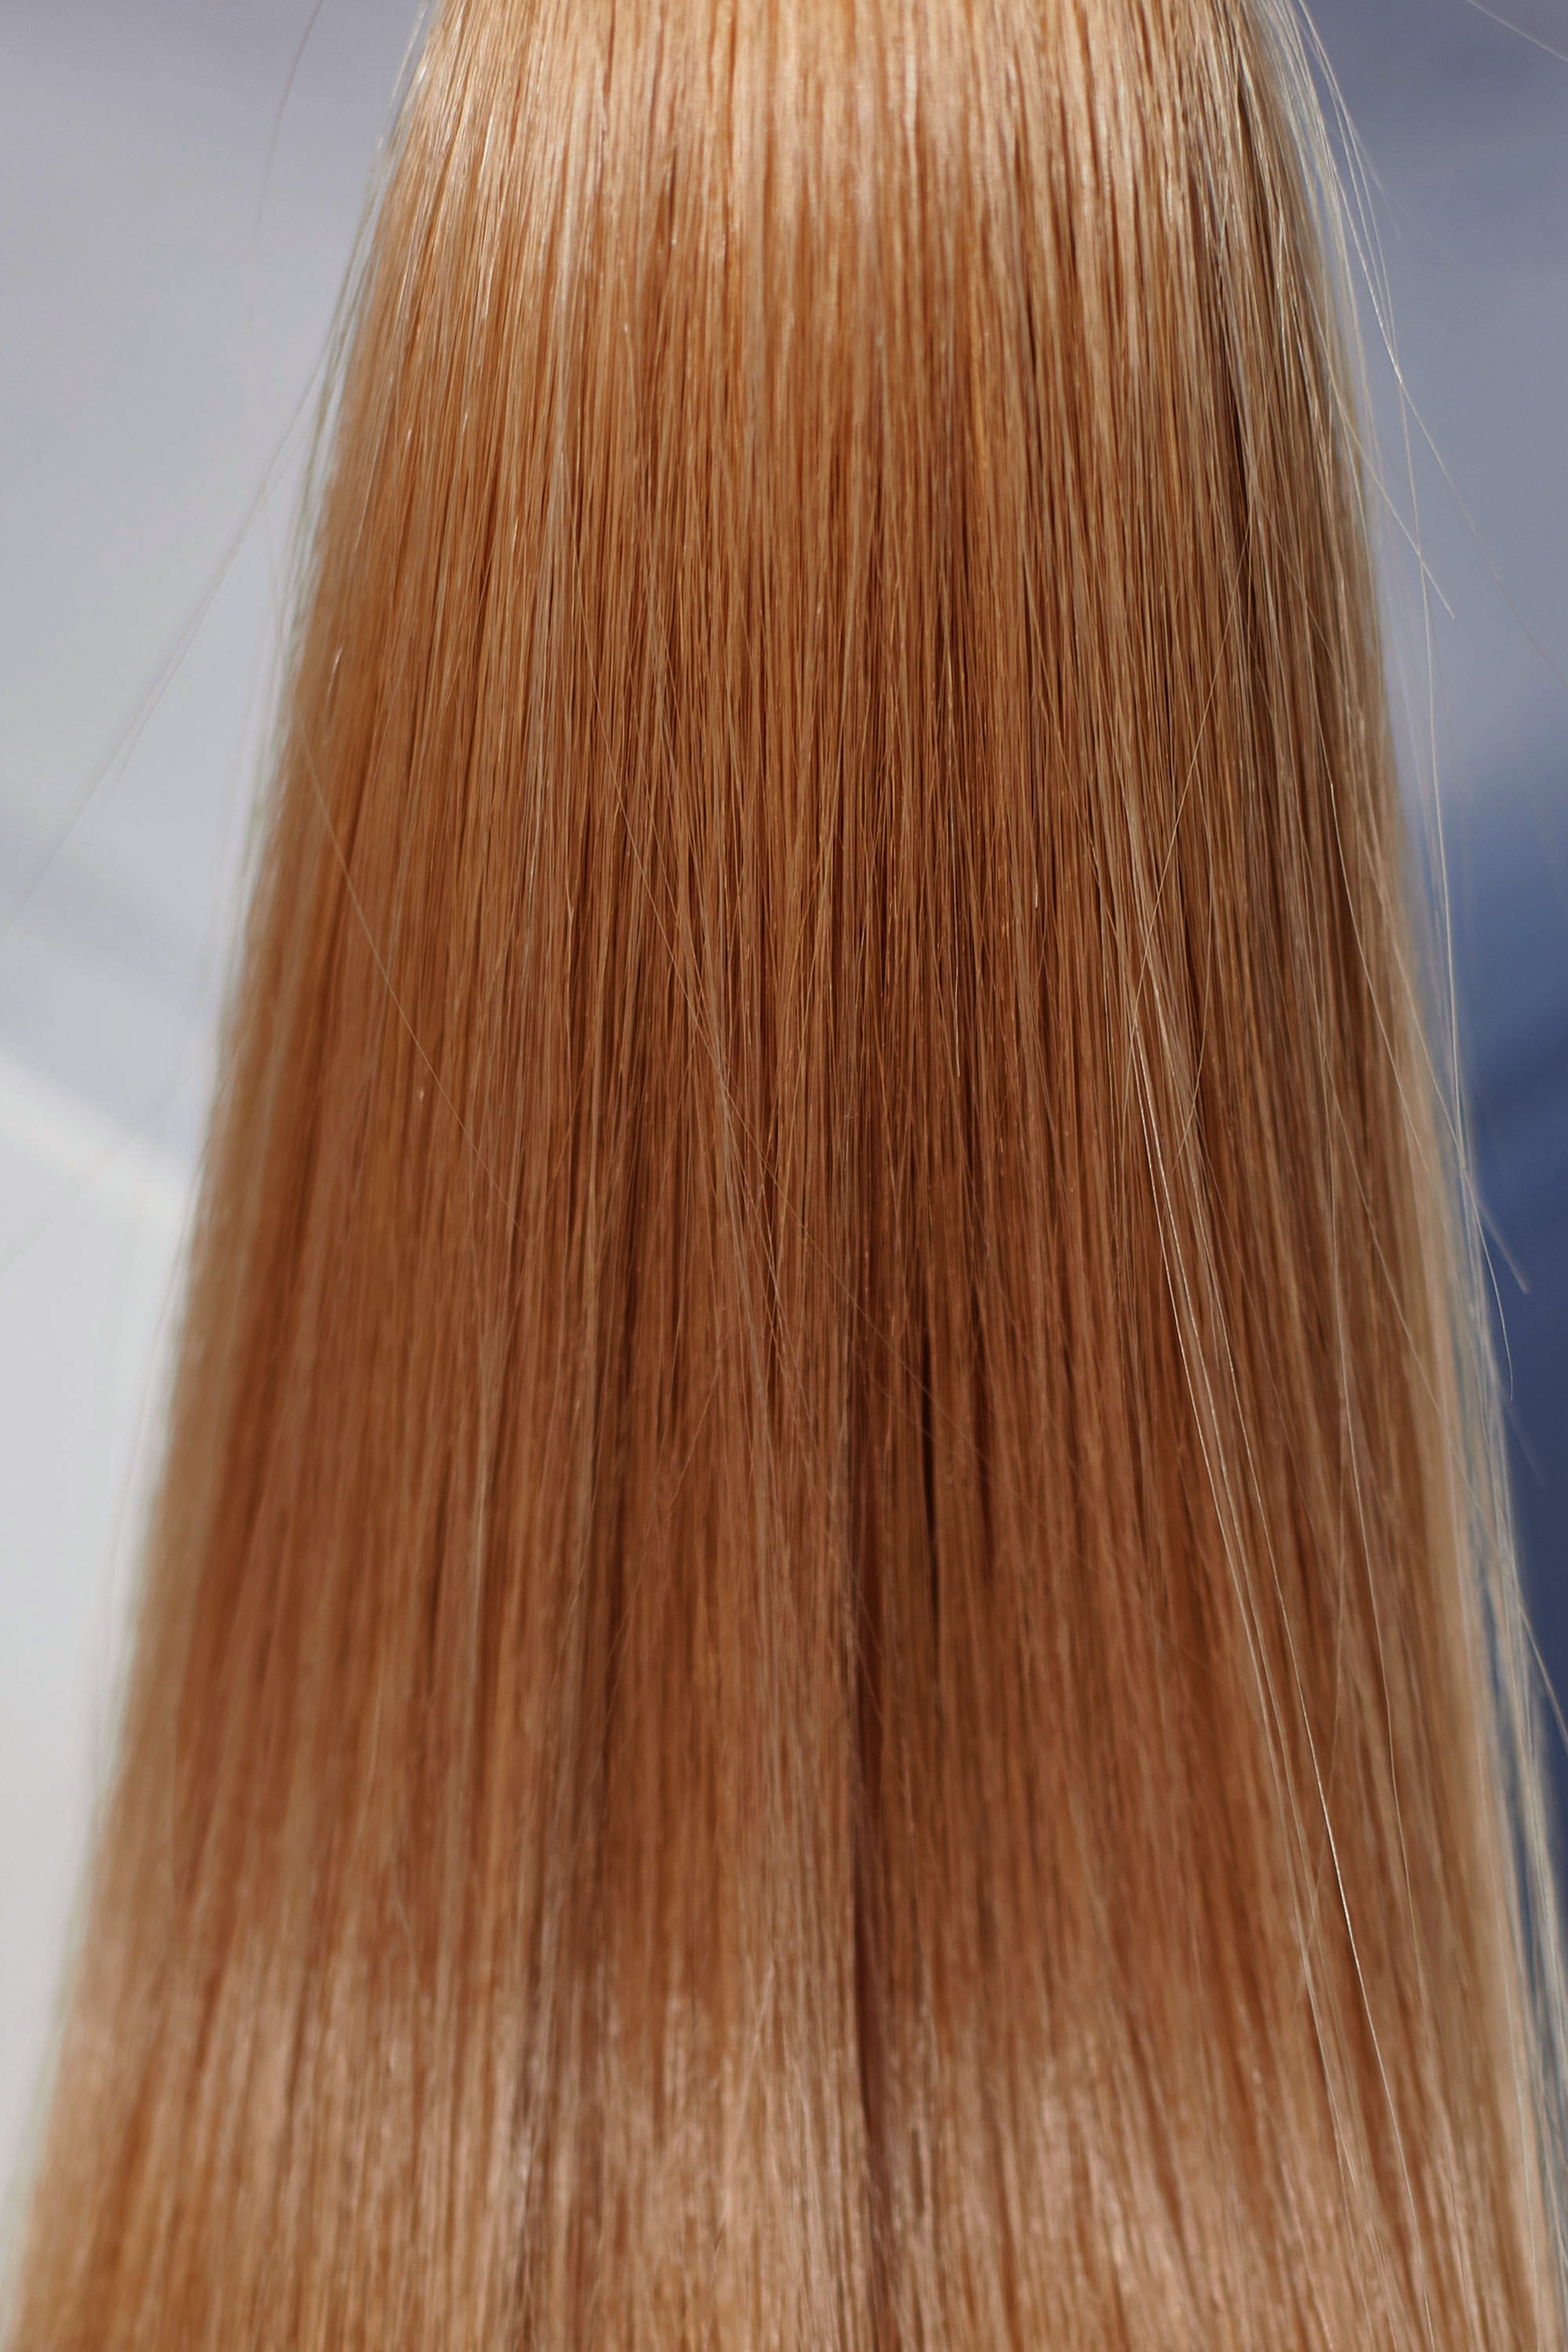 Behair professional Bulk hair "Premium" 28" (70cm) Natural Straight Honey Wheat #12 - 25g hair extensions